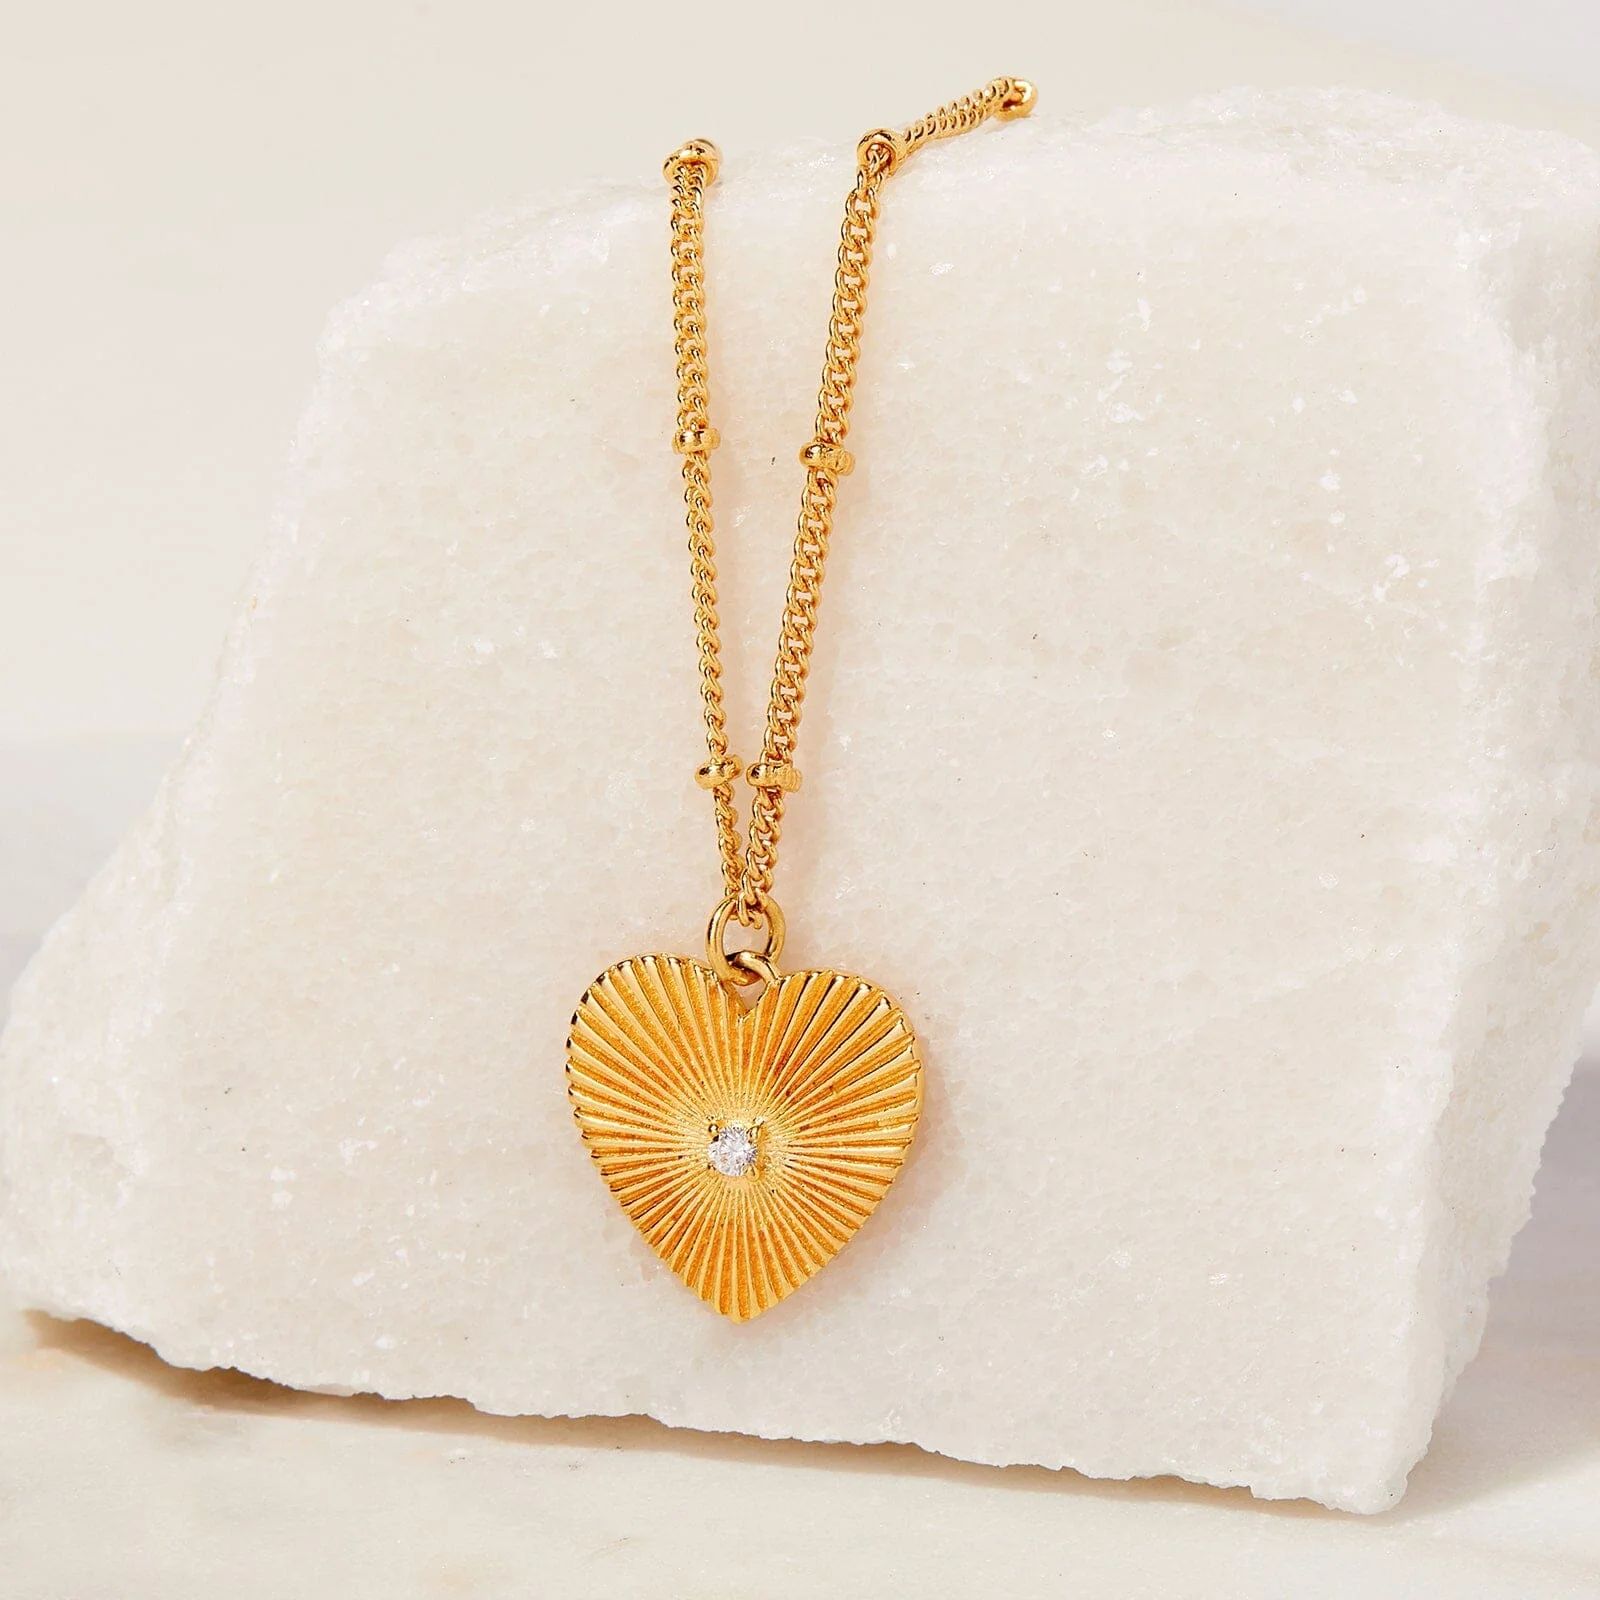 Sunburst Heart Necklace | Pura Vida Bracelets